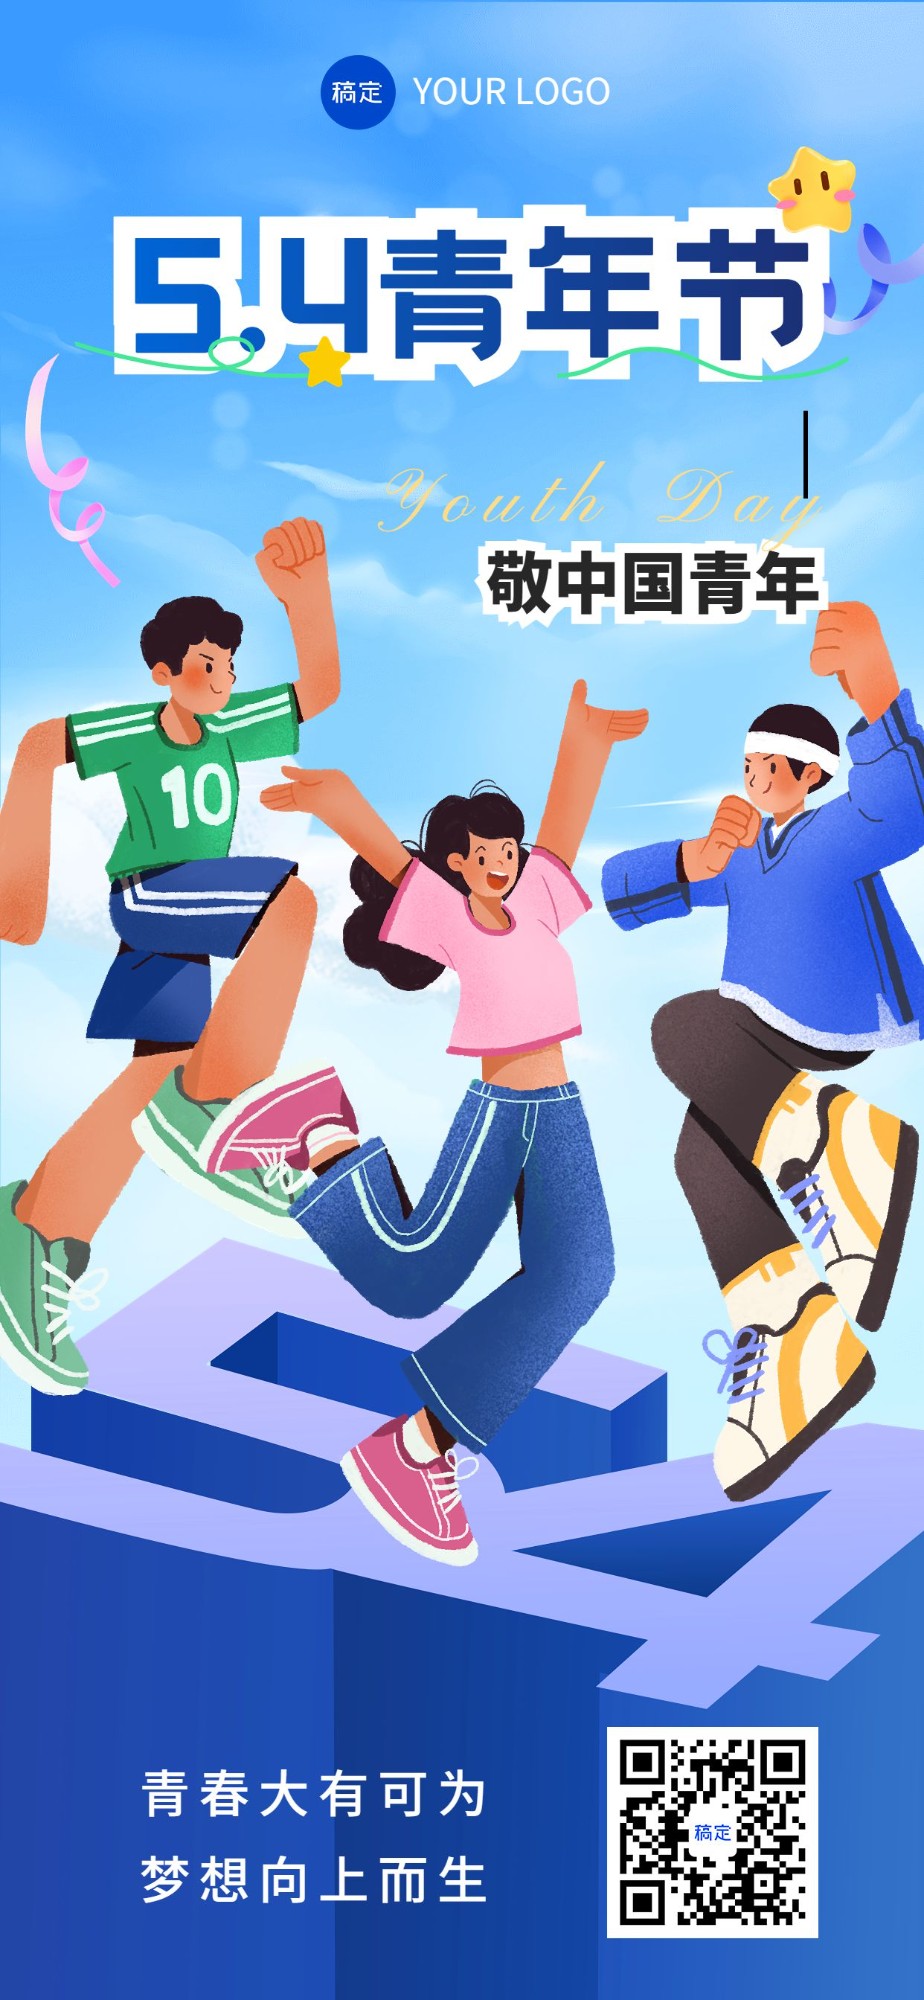 企业54青年节节日祝福插画风全屏竖版海报预览效果